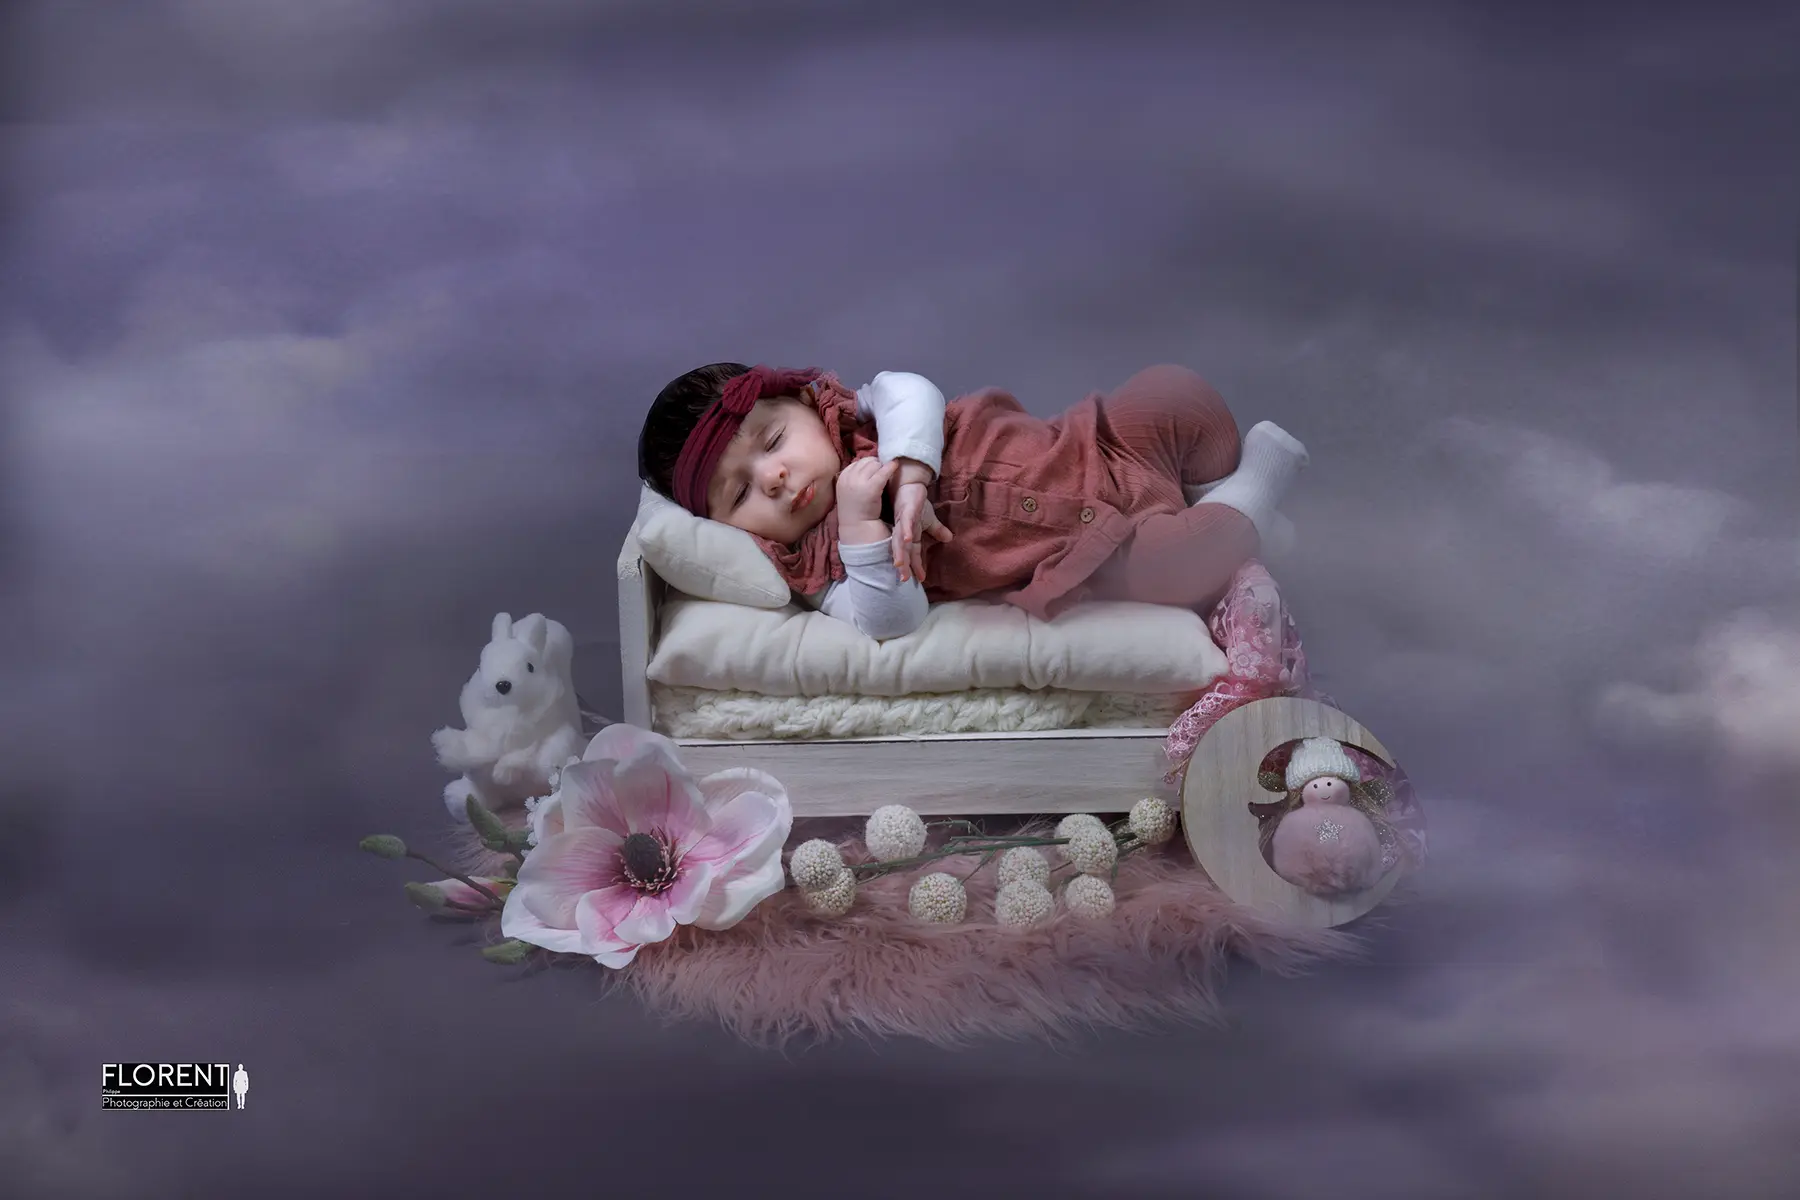 photographe bébé dort dans les nuage sur petit lit adorable florent fanie photographe boulogne sur mer lille le touquet paris calais saint omer berck arras